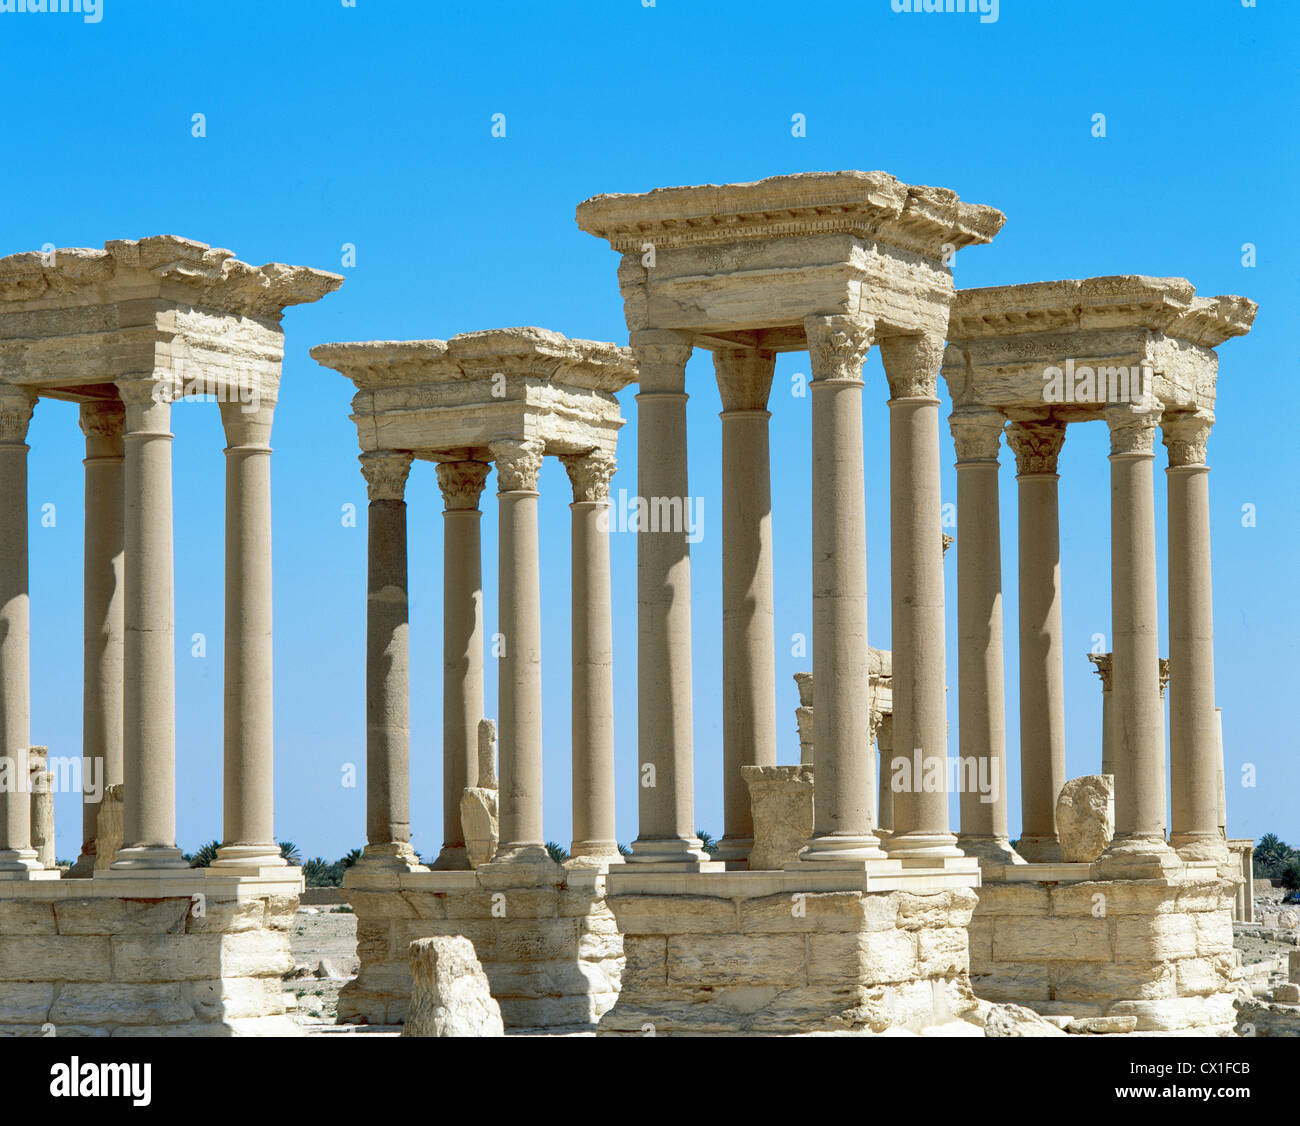 Arte romana. La Siria. Palmyra. Il tetrapylon. Antico tipo di monumento di forma cubica con un cancello su ciascuno dei quattro lati. Foto Stock